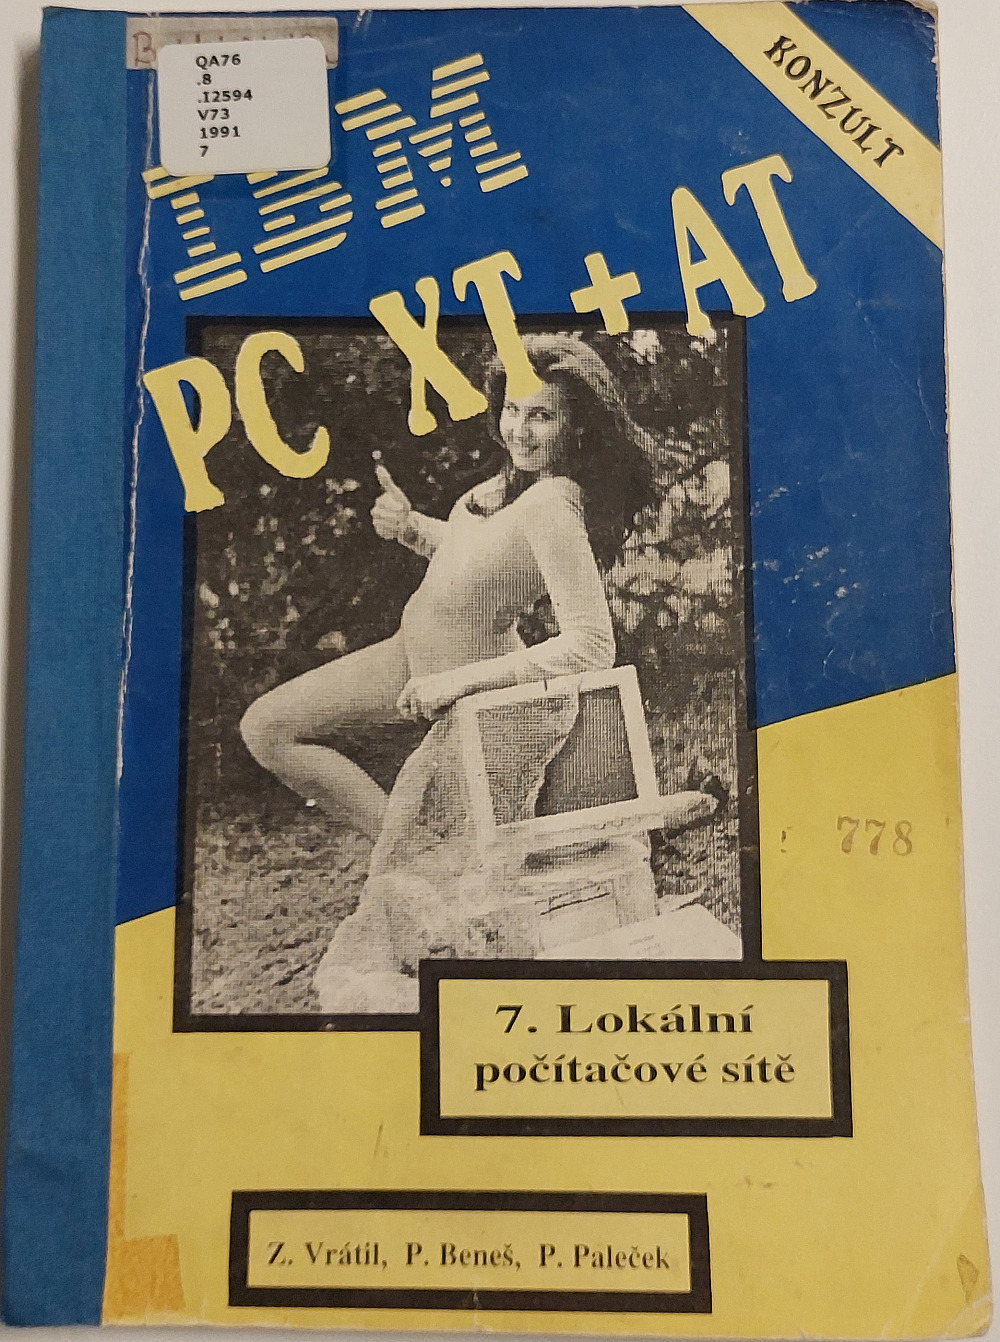 IBM PC XT + AT. 7, Lokální počítačové sítě